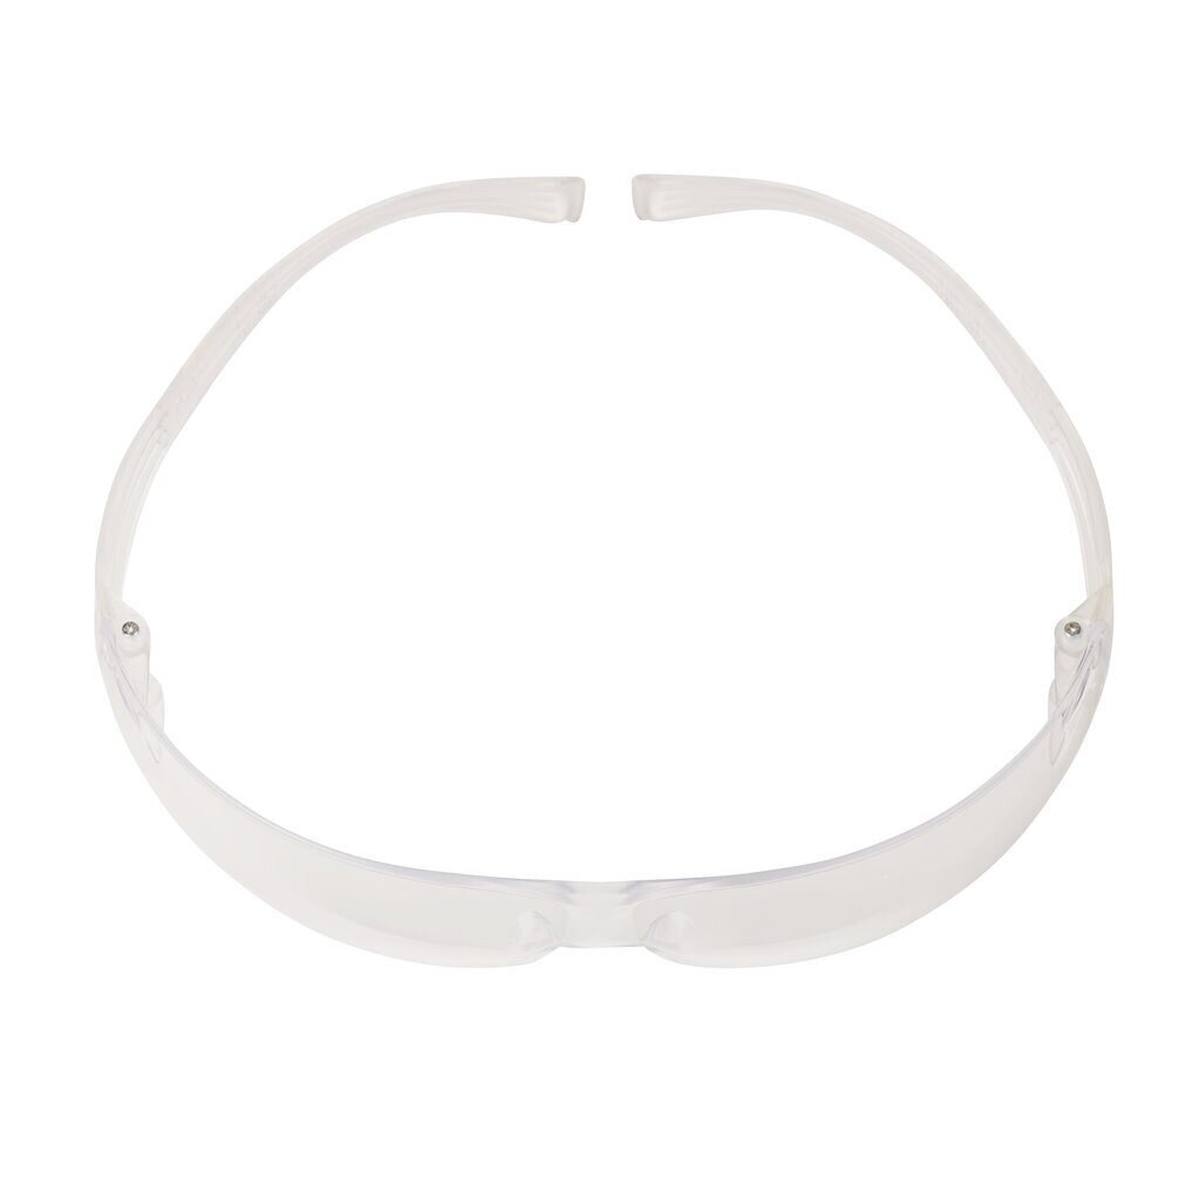 Gafas de protección 3M SecureFit 400 Reader, patillas negras/verdes, tratamiento antirrayas/antivaho, lente transparente con resistencia 1,5, SF415AS/AF-EU